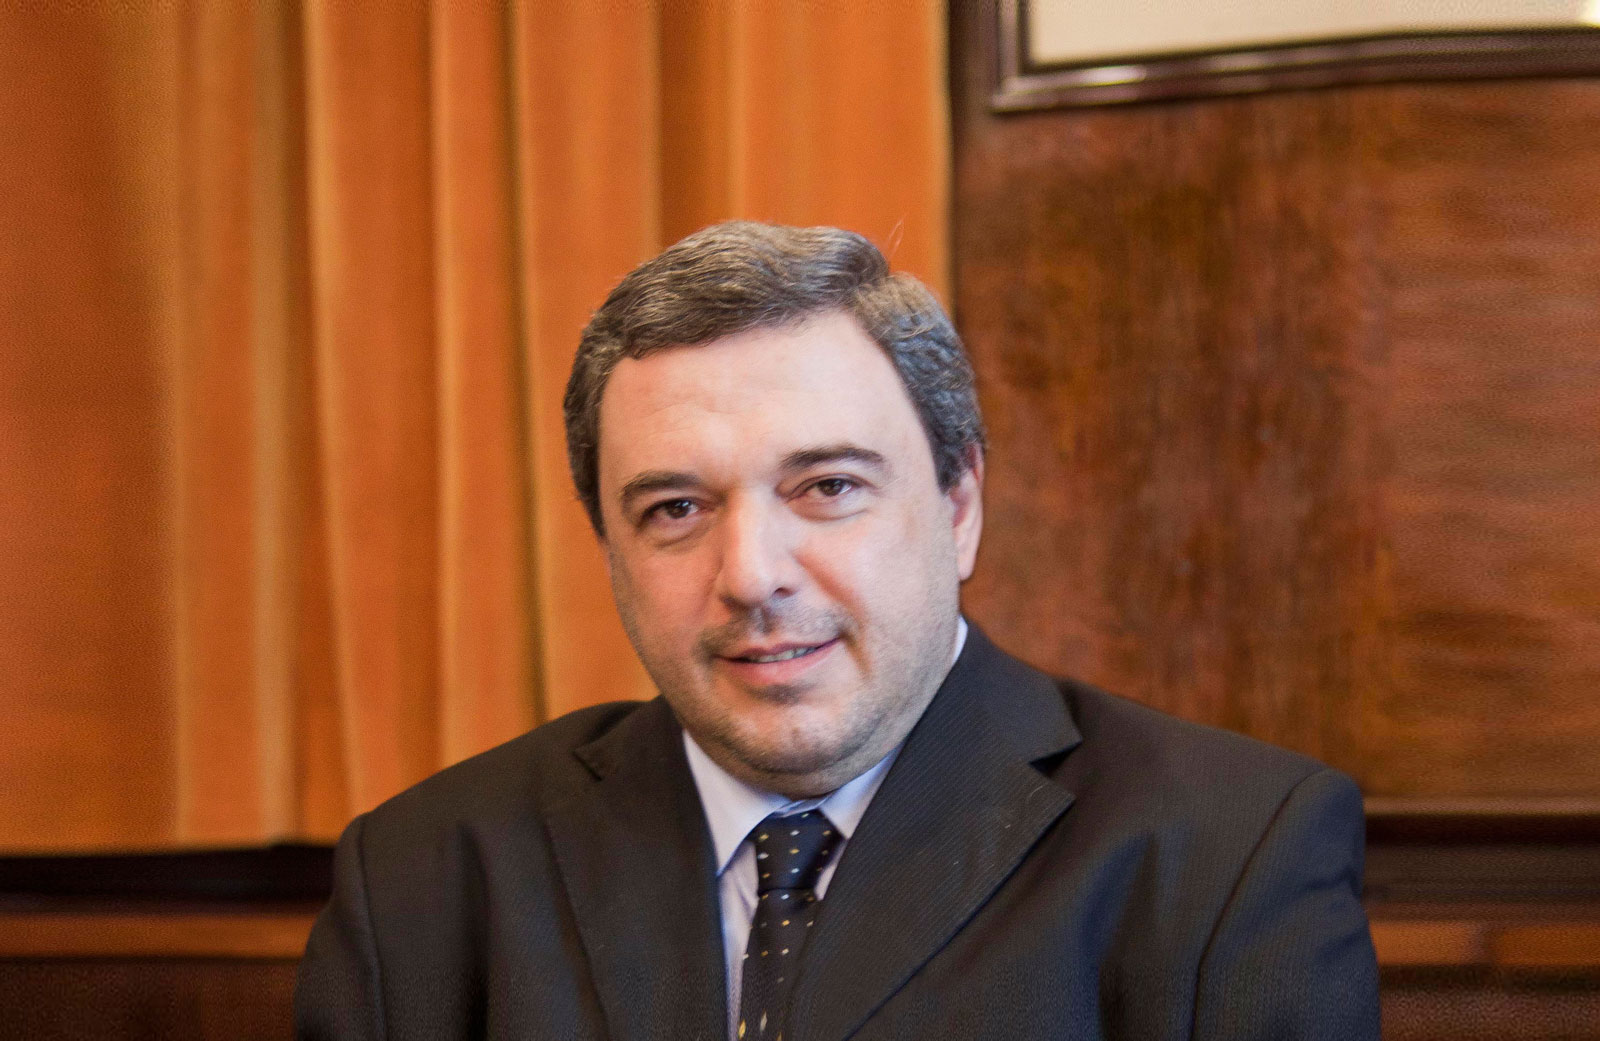 Mario Bergara, President of the Central Bank of Uruguay